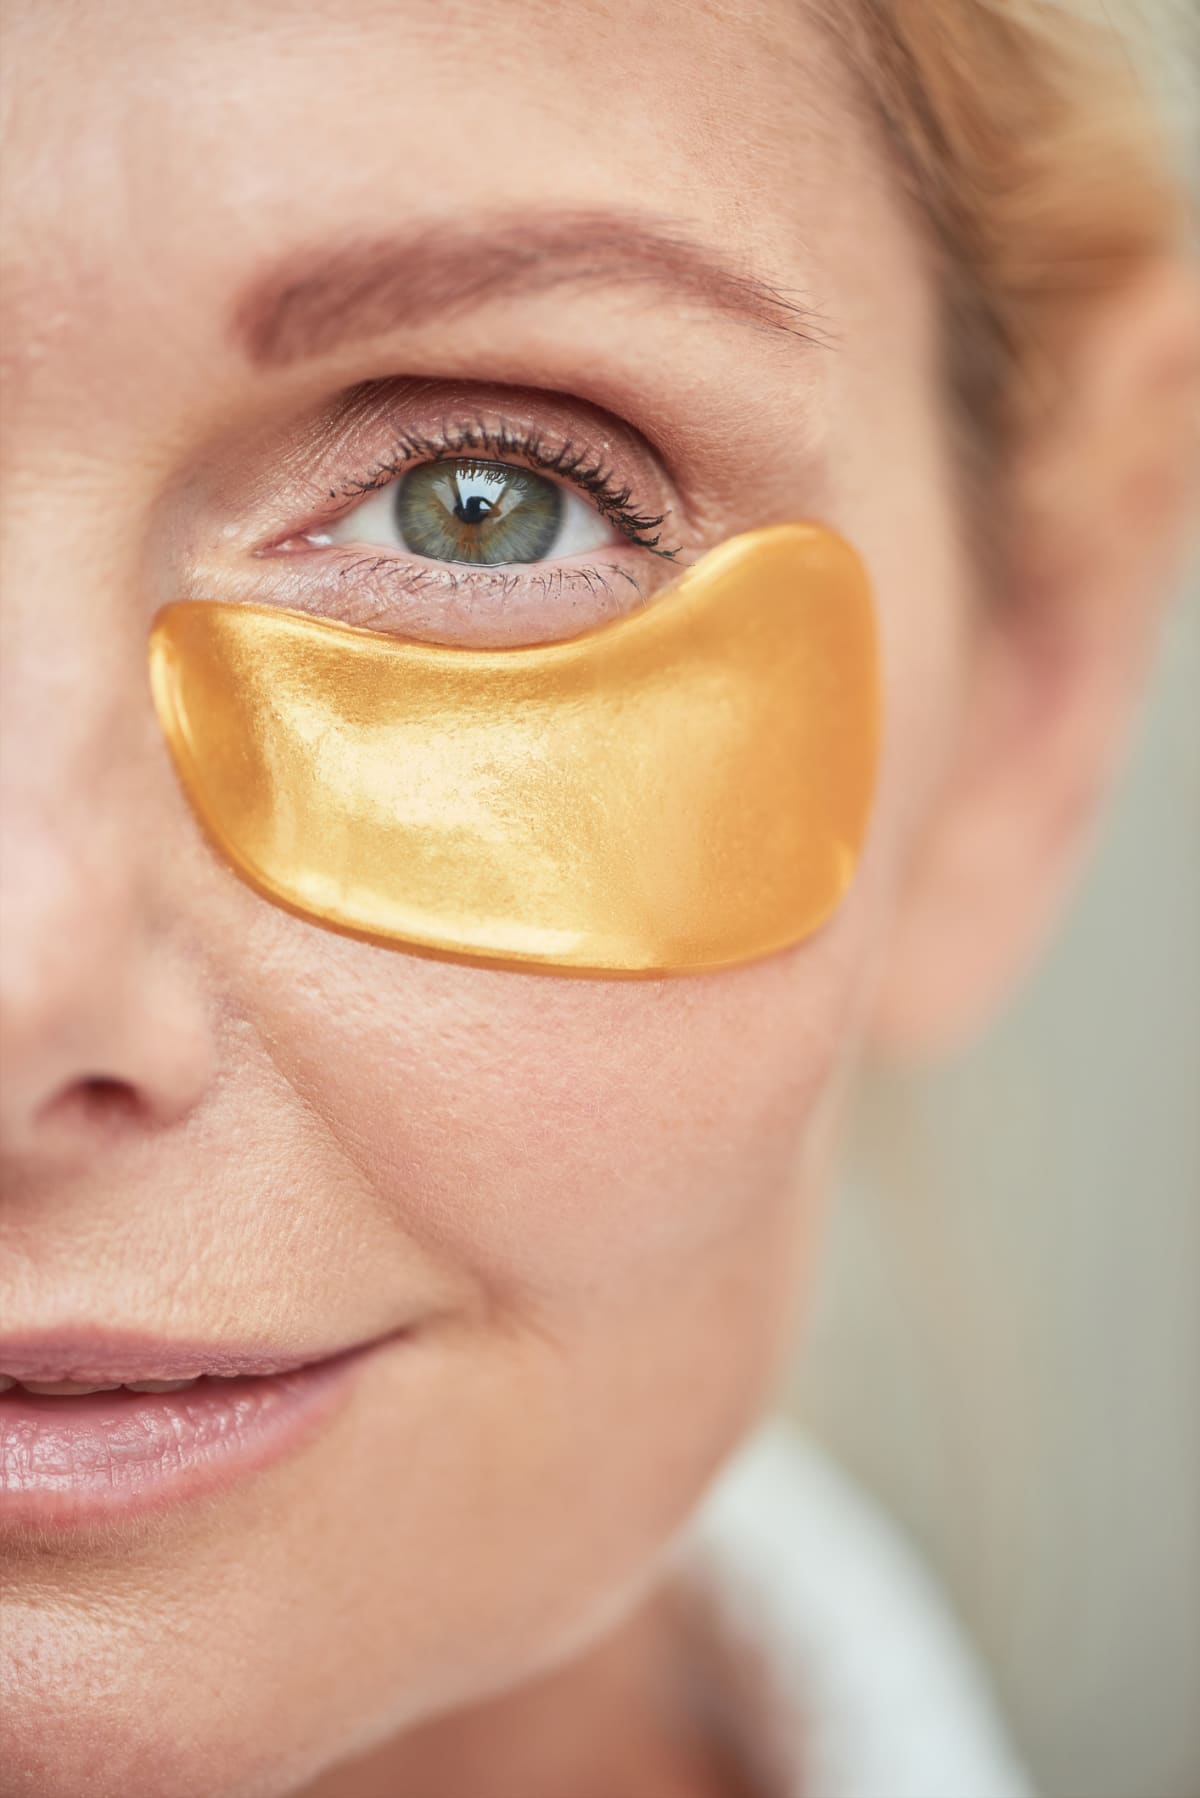 Under eye lotion. Skin moisturizing. Anti-aging cosmetology. Beautiful woman applying cream product on fresh radiant face on white background.